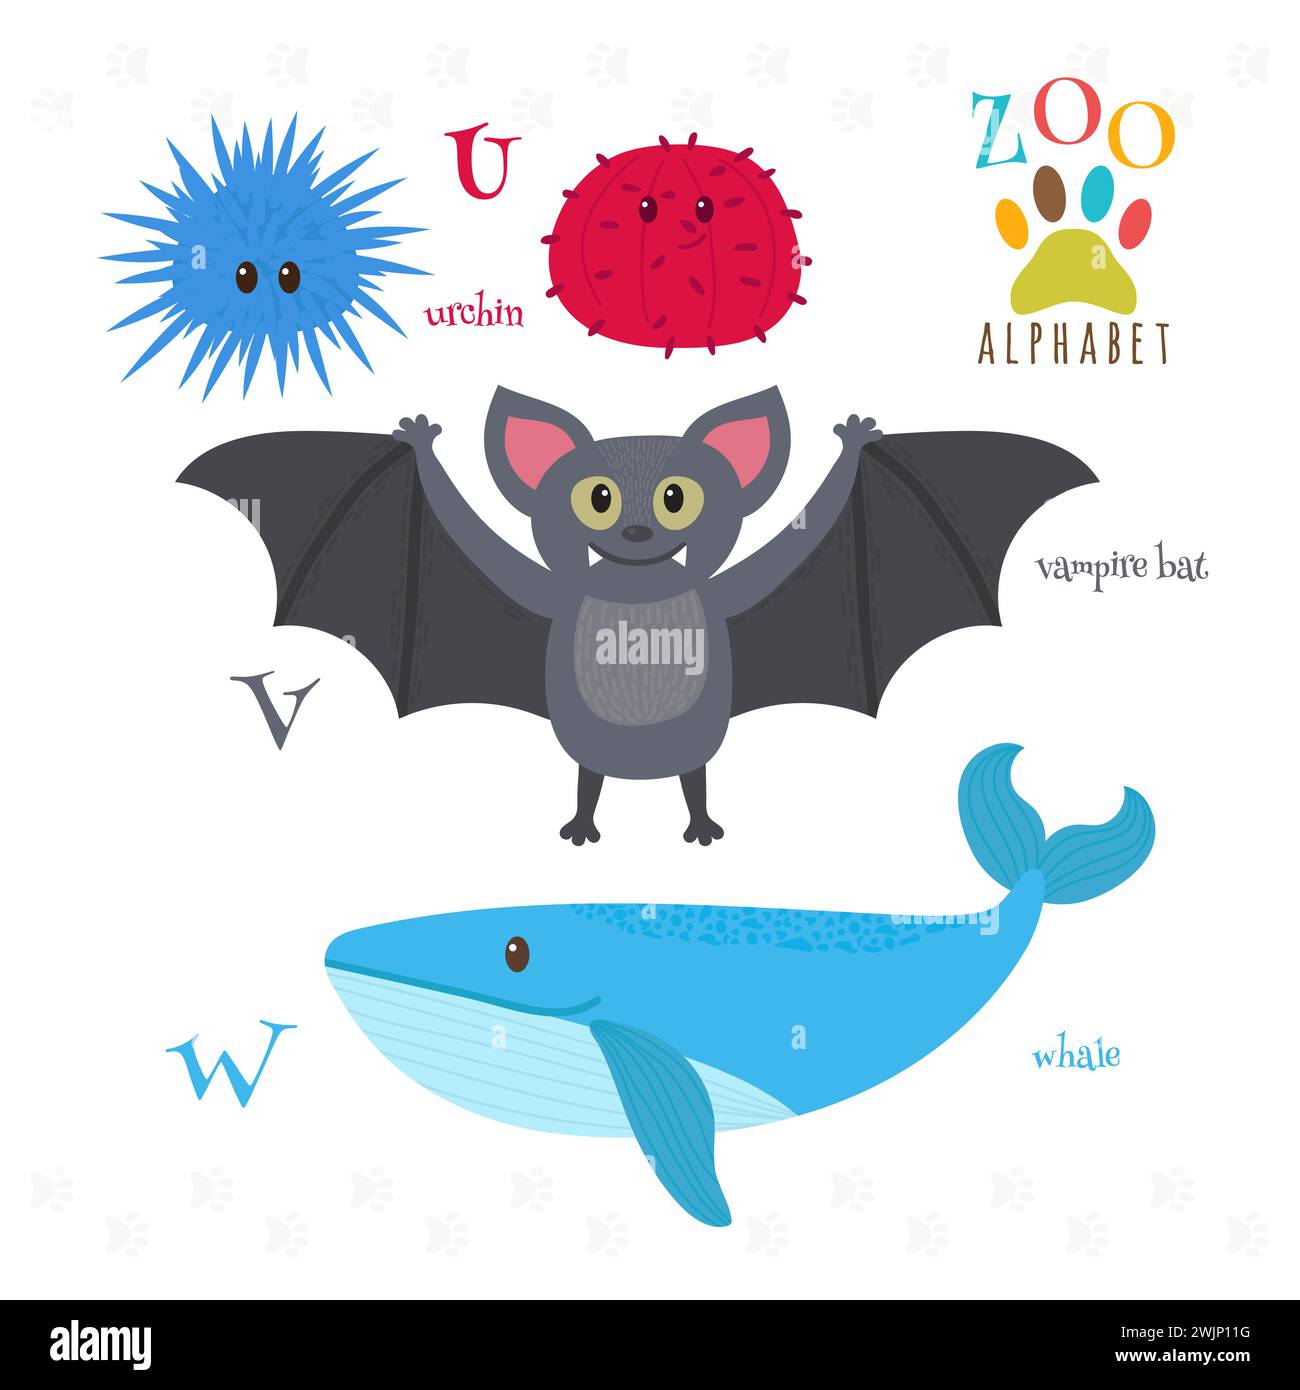 Alfabeto dello zoo con divertenti cartoni animati. Lettere U, V, W. Riccio, pipistrello vampiro, balena. Illustrazione vettoriale Illustrazione Vettoriale